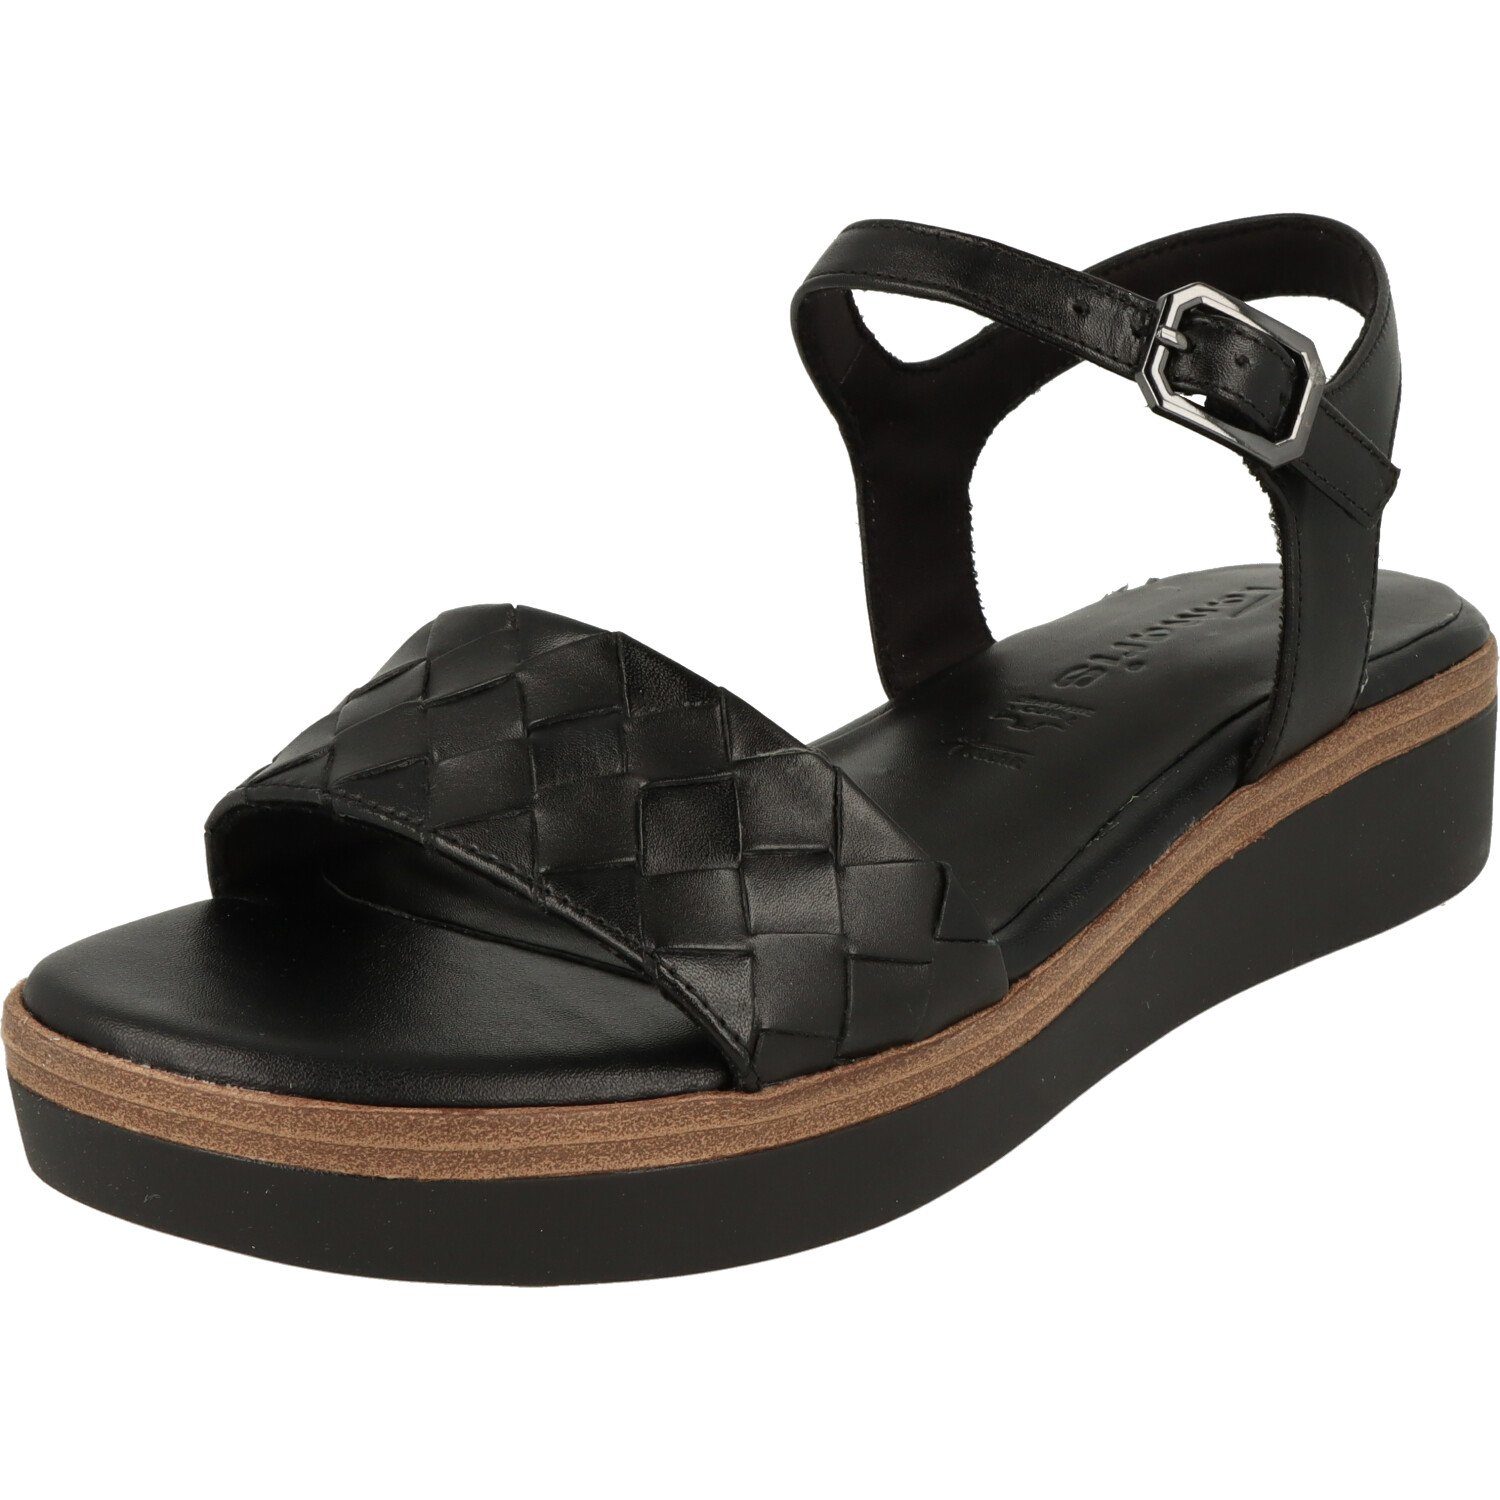 Tamaris Damen Schuhe Komfort Leder Riemchen Sandalette 1-28216-20 Sandalette Black